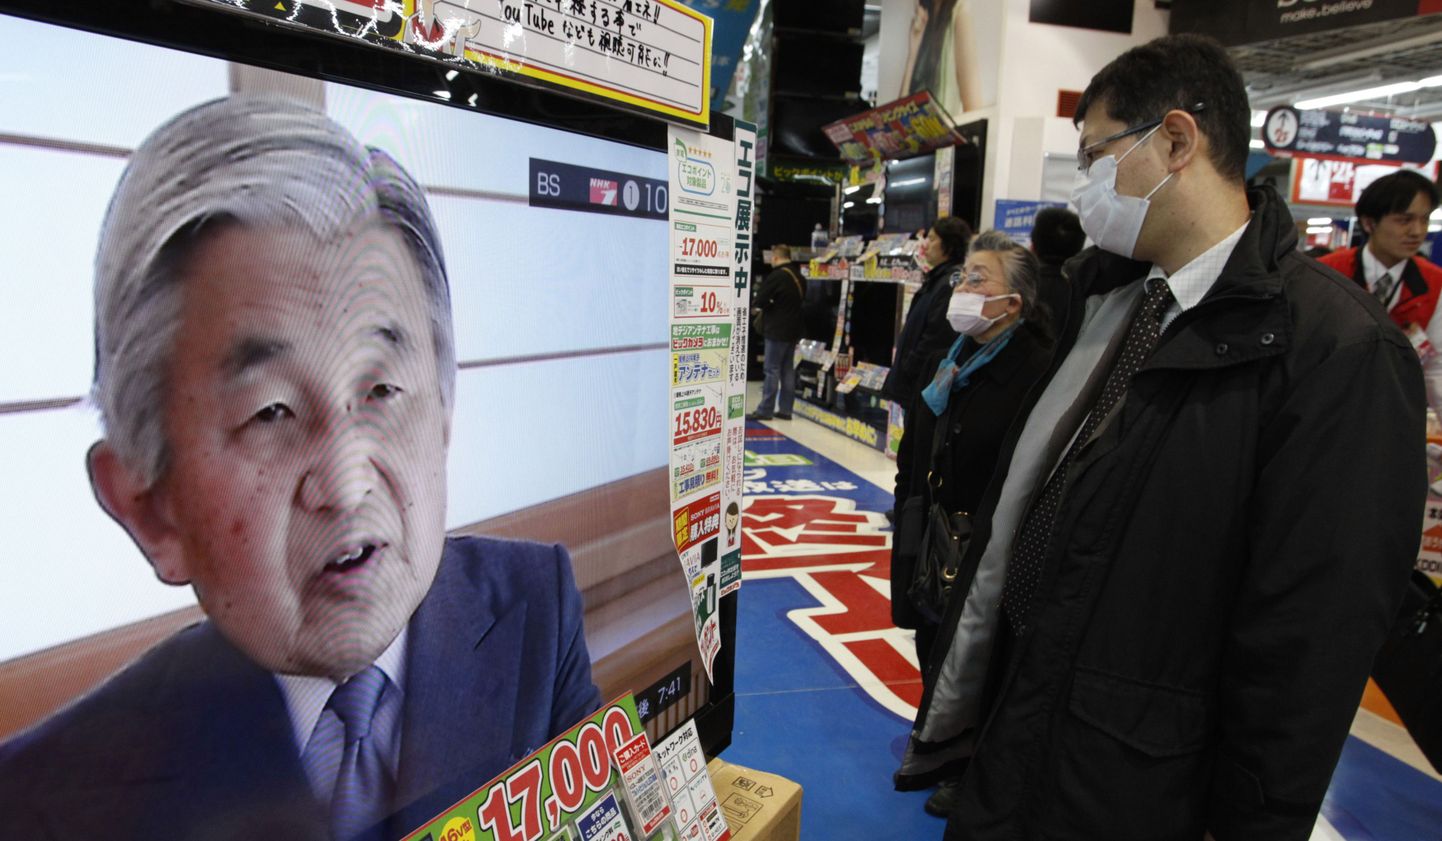 Inimesed vaatamas Jaapani keisri Akihito telepöördumist.